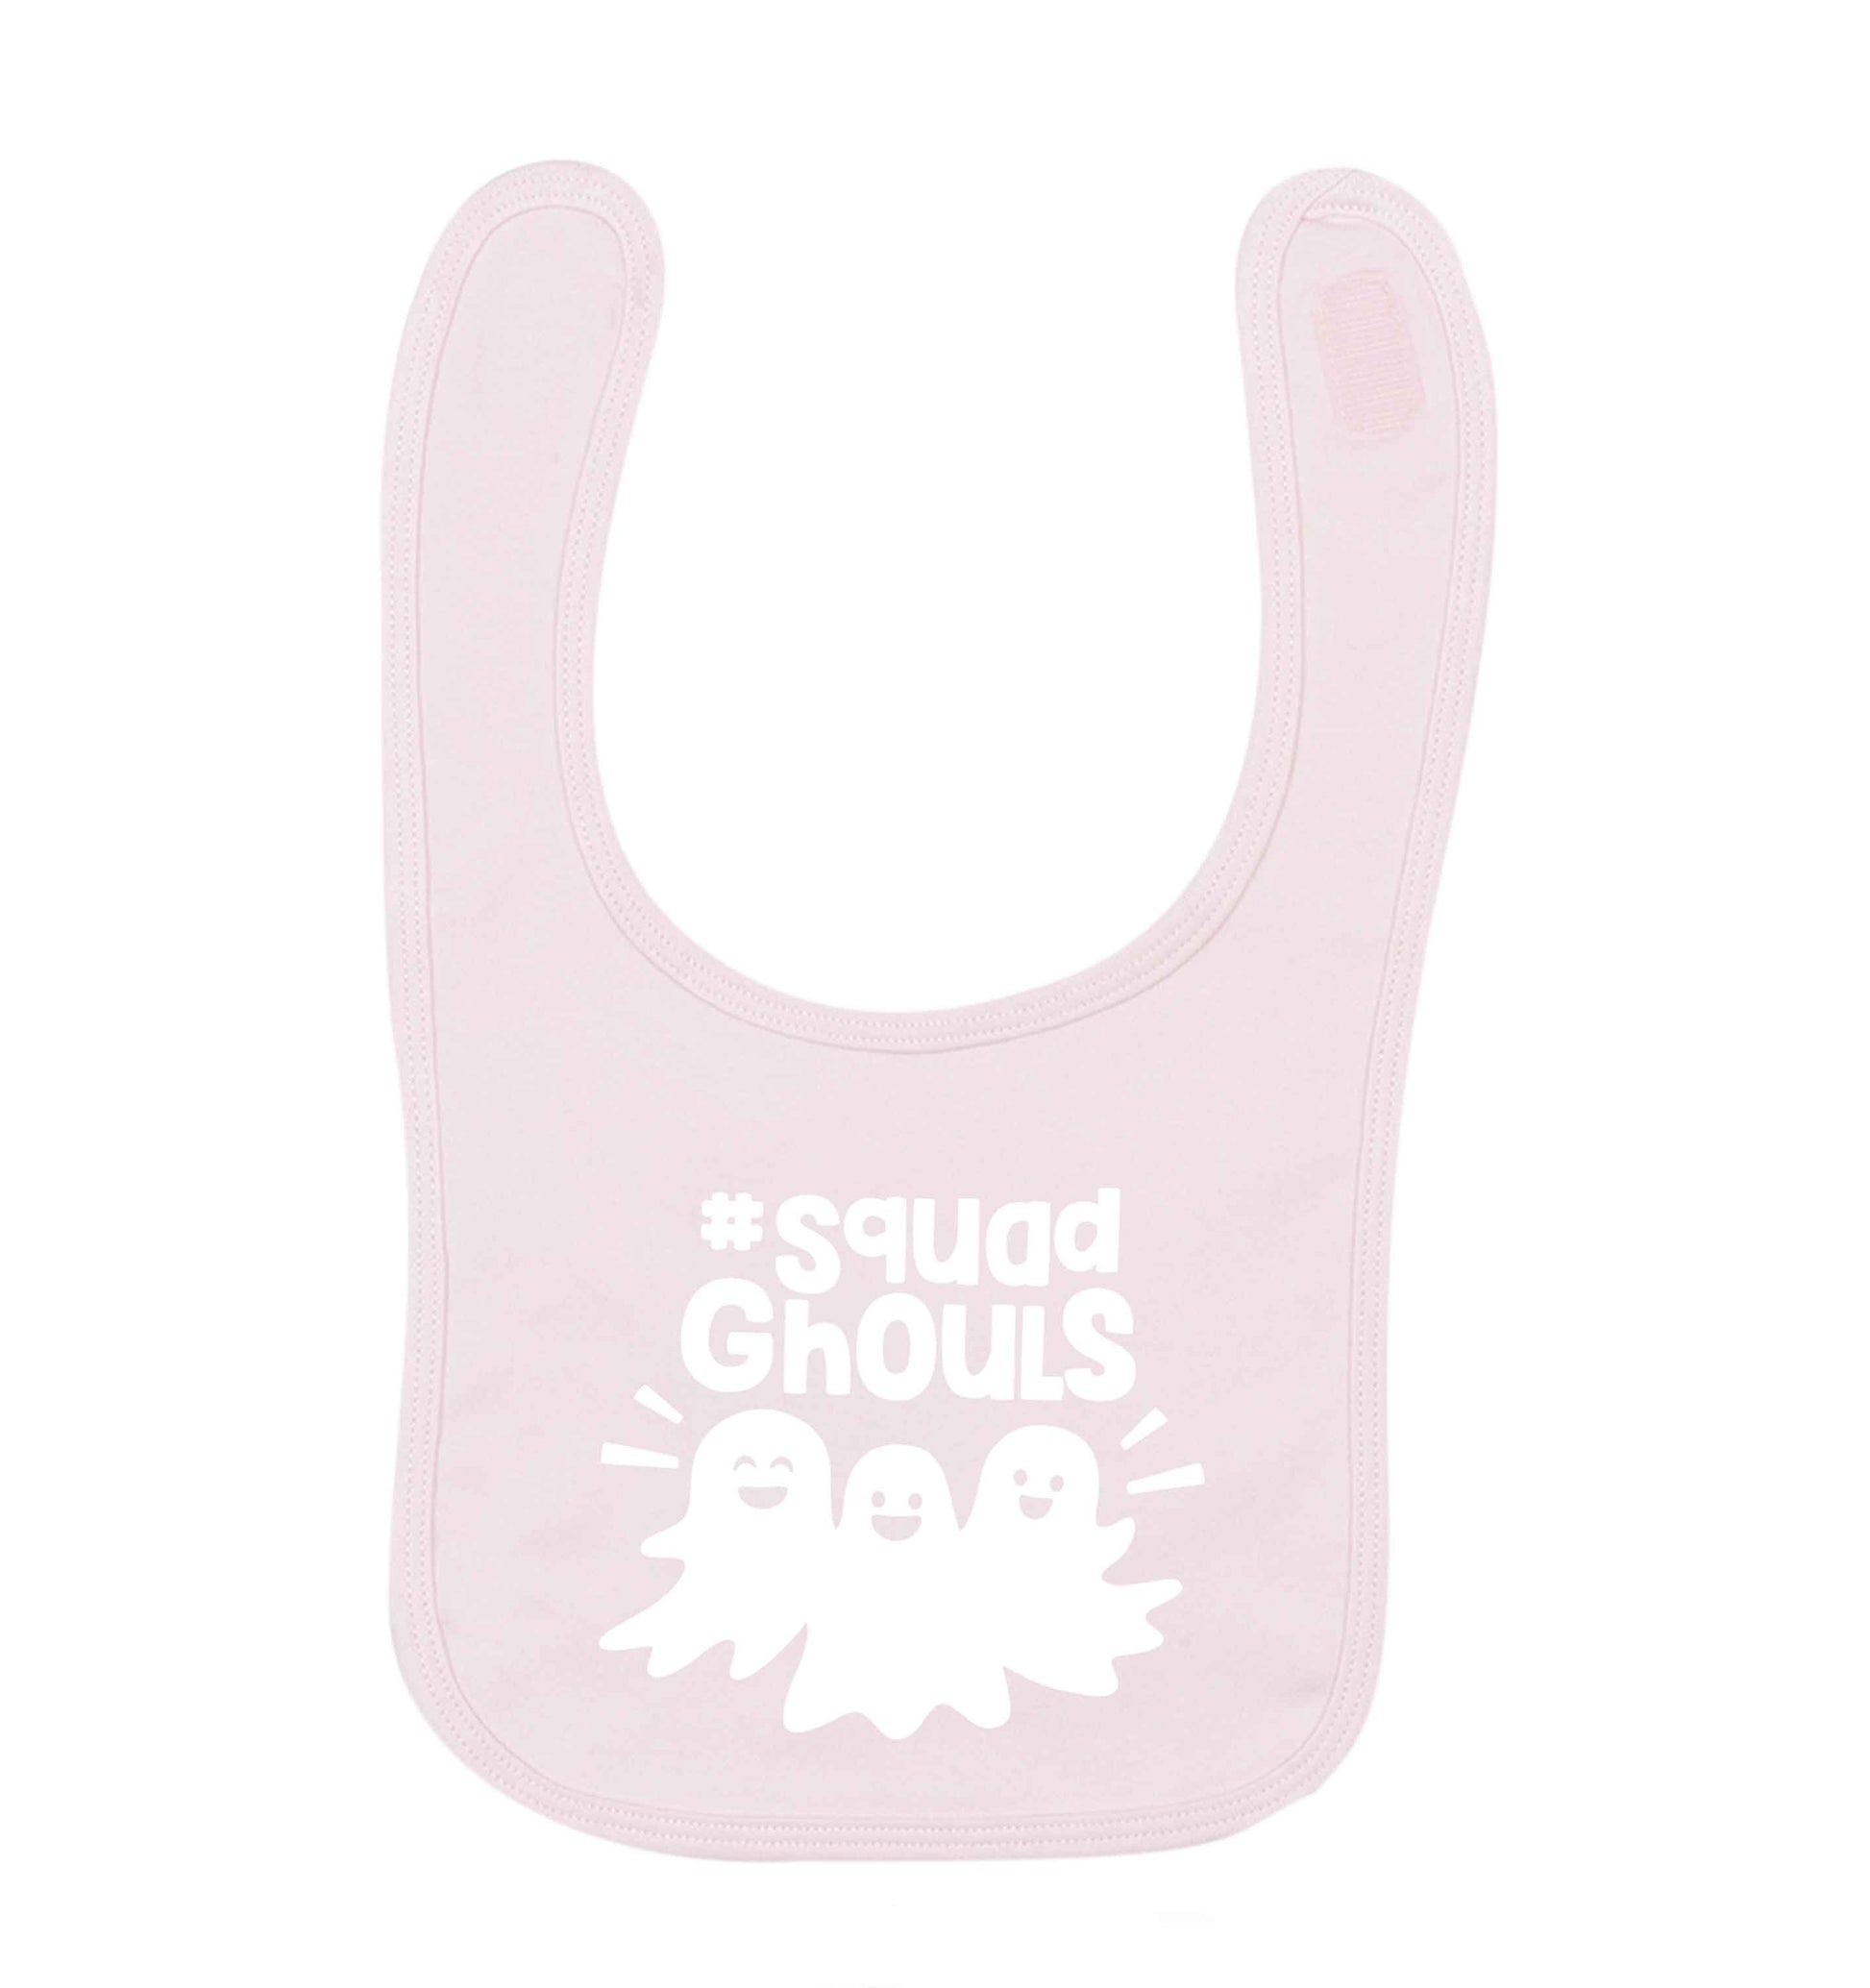 Squad ghouls Kit pale pink baby bib